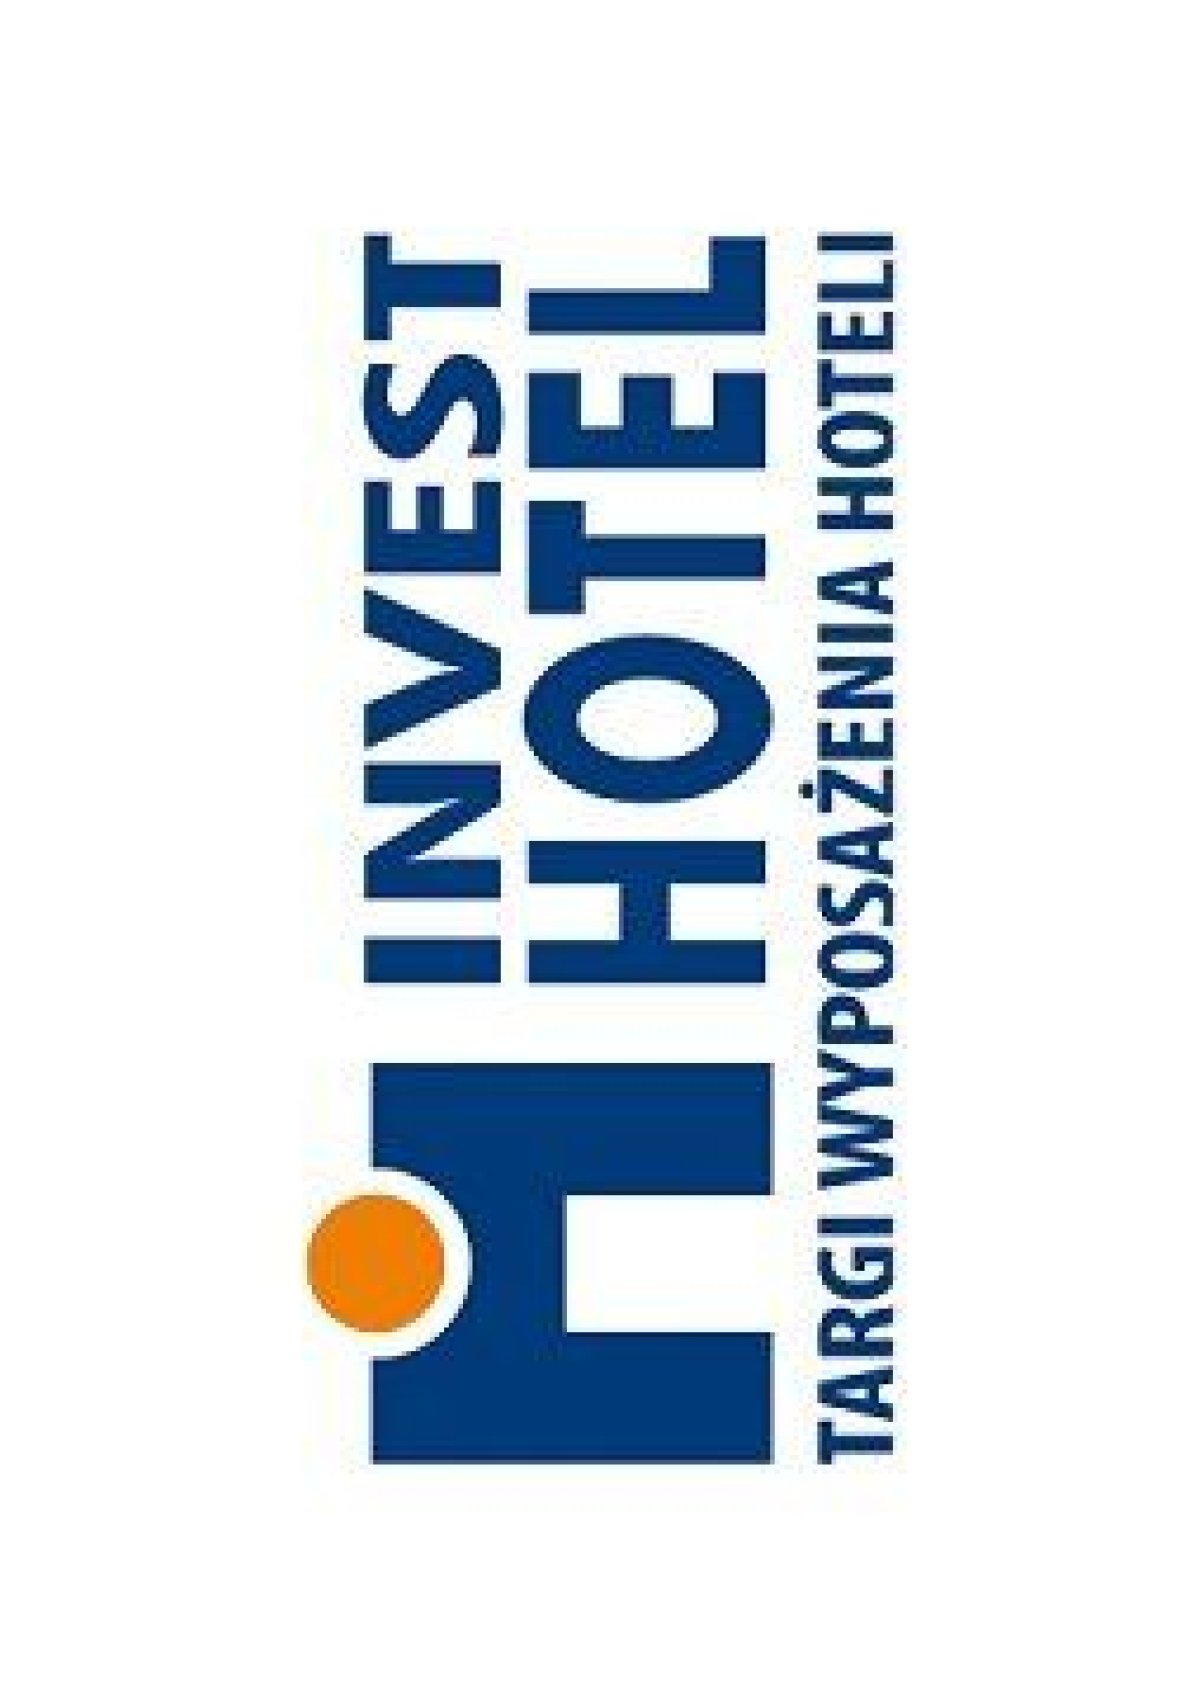 Hotelarskie inwestycje okiem ekspertów, czyli konferencja HOTEL INVESTORS MEETING 